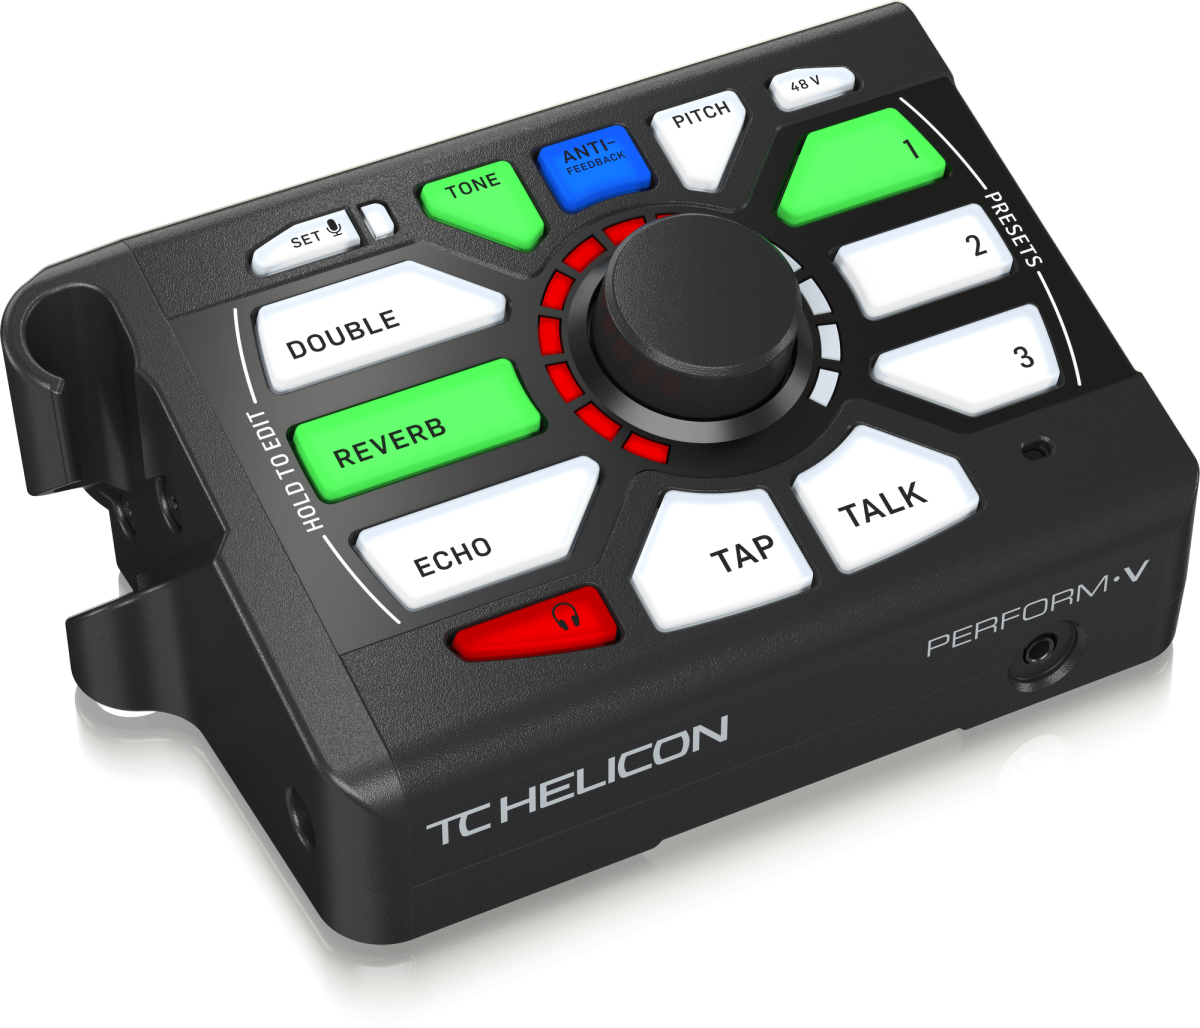 TC HELICON PERFORM-V - процессор эффектов для вокала, установка на микроф.стойку купить в prostore.me